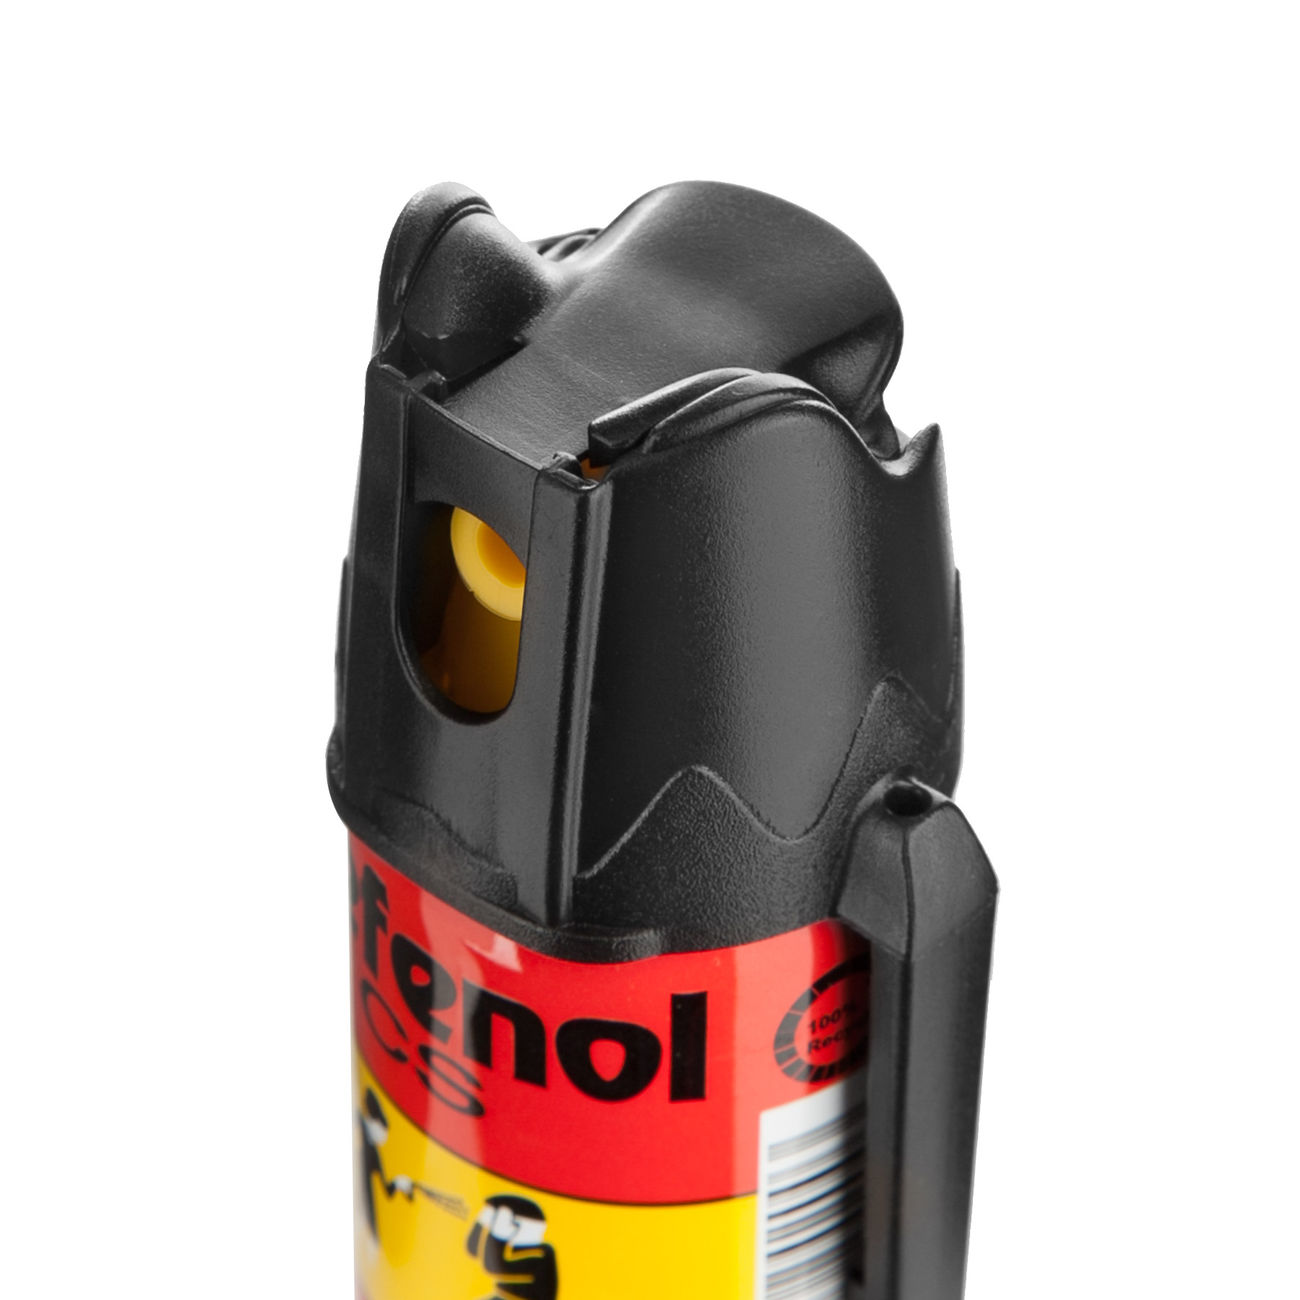 Ballistol Tränengasspray 40ml Bild 1